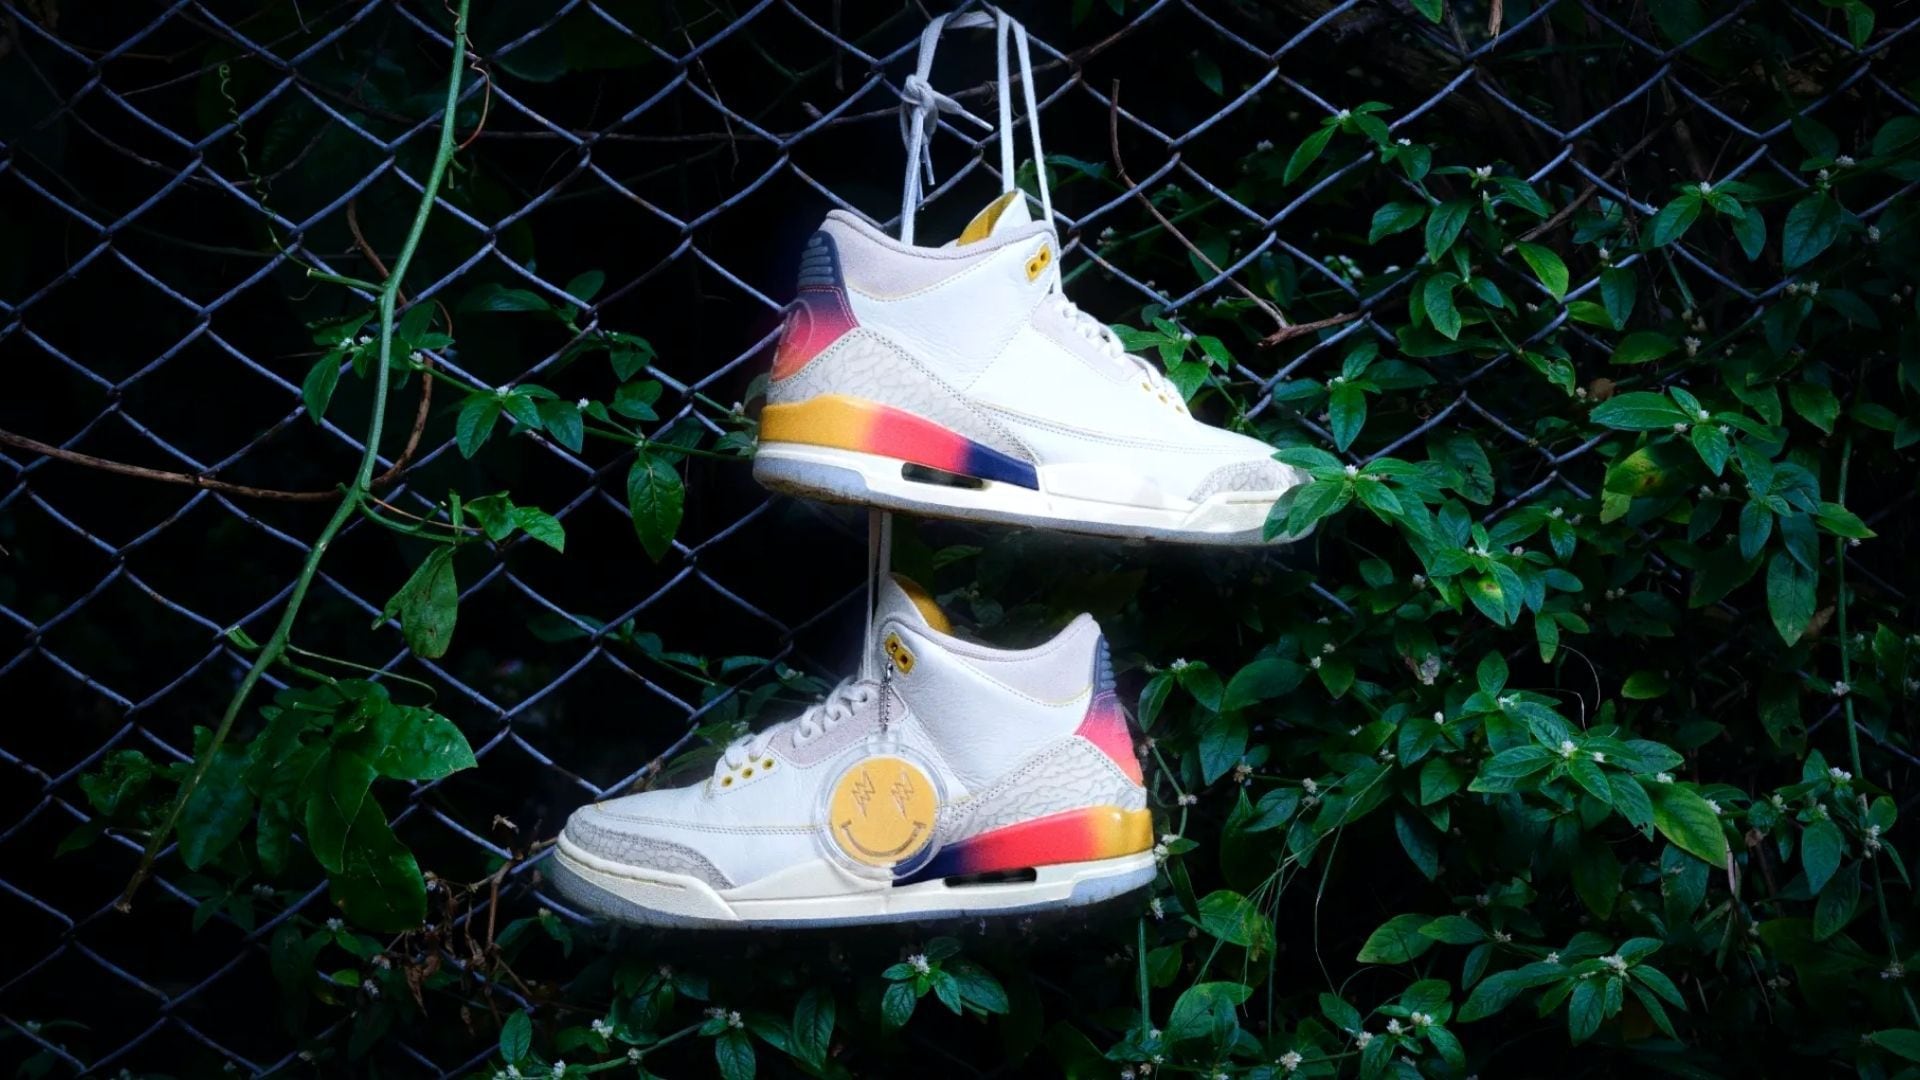 Conoza los detalles de las nuevas zapatillas de AIR Jordan y J Balvin - crédito Nike.com